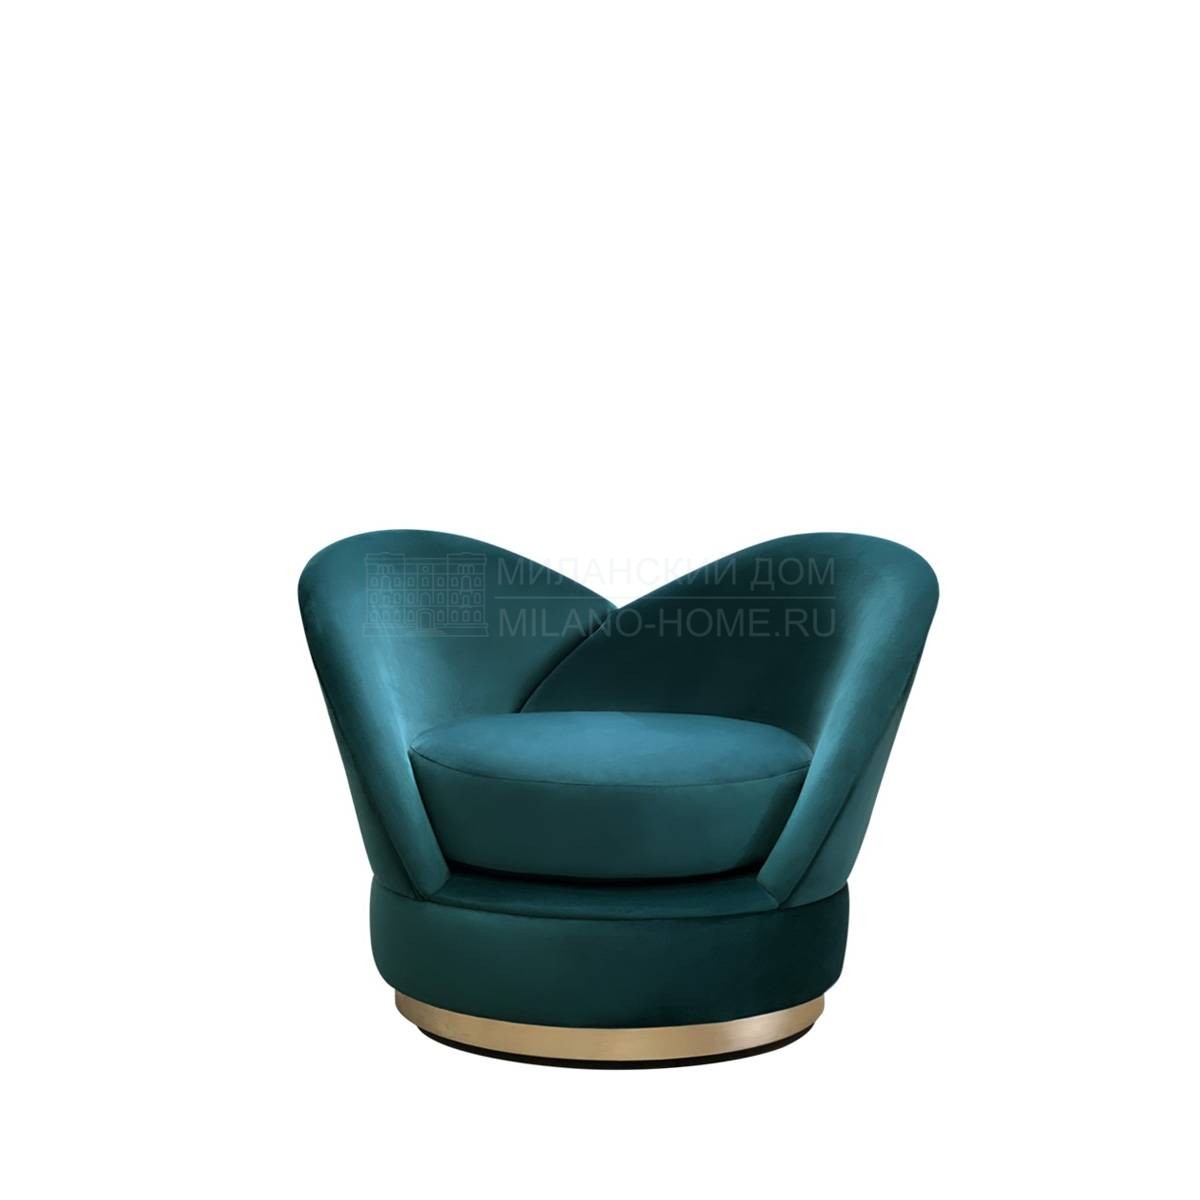 Круглое кресло Blooms armchair из Испании фабрики COLECCION ALEXANDRA